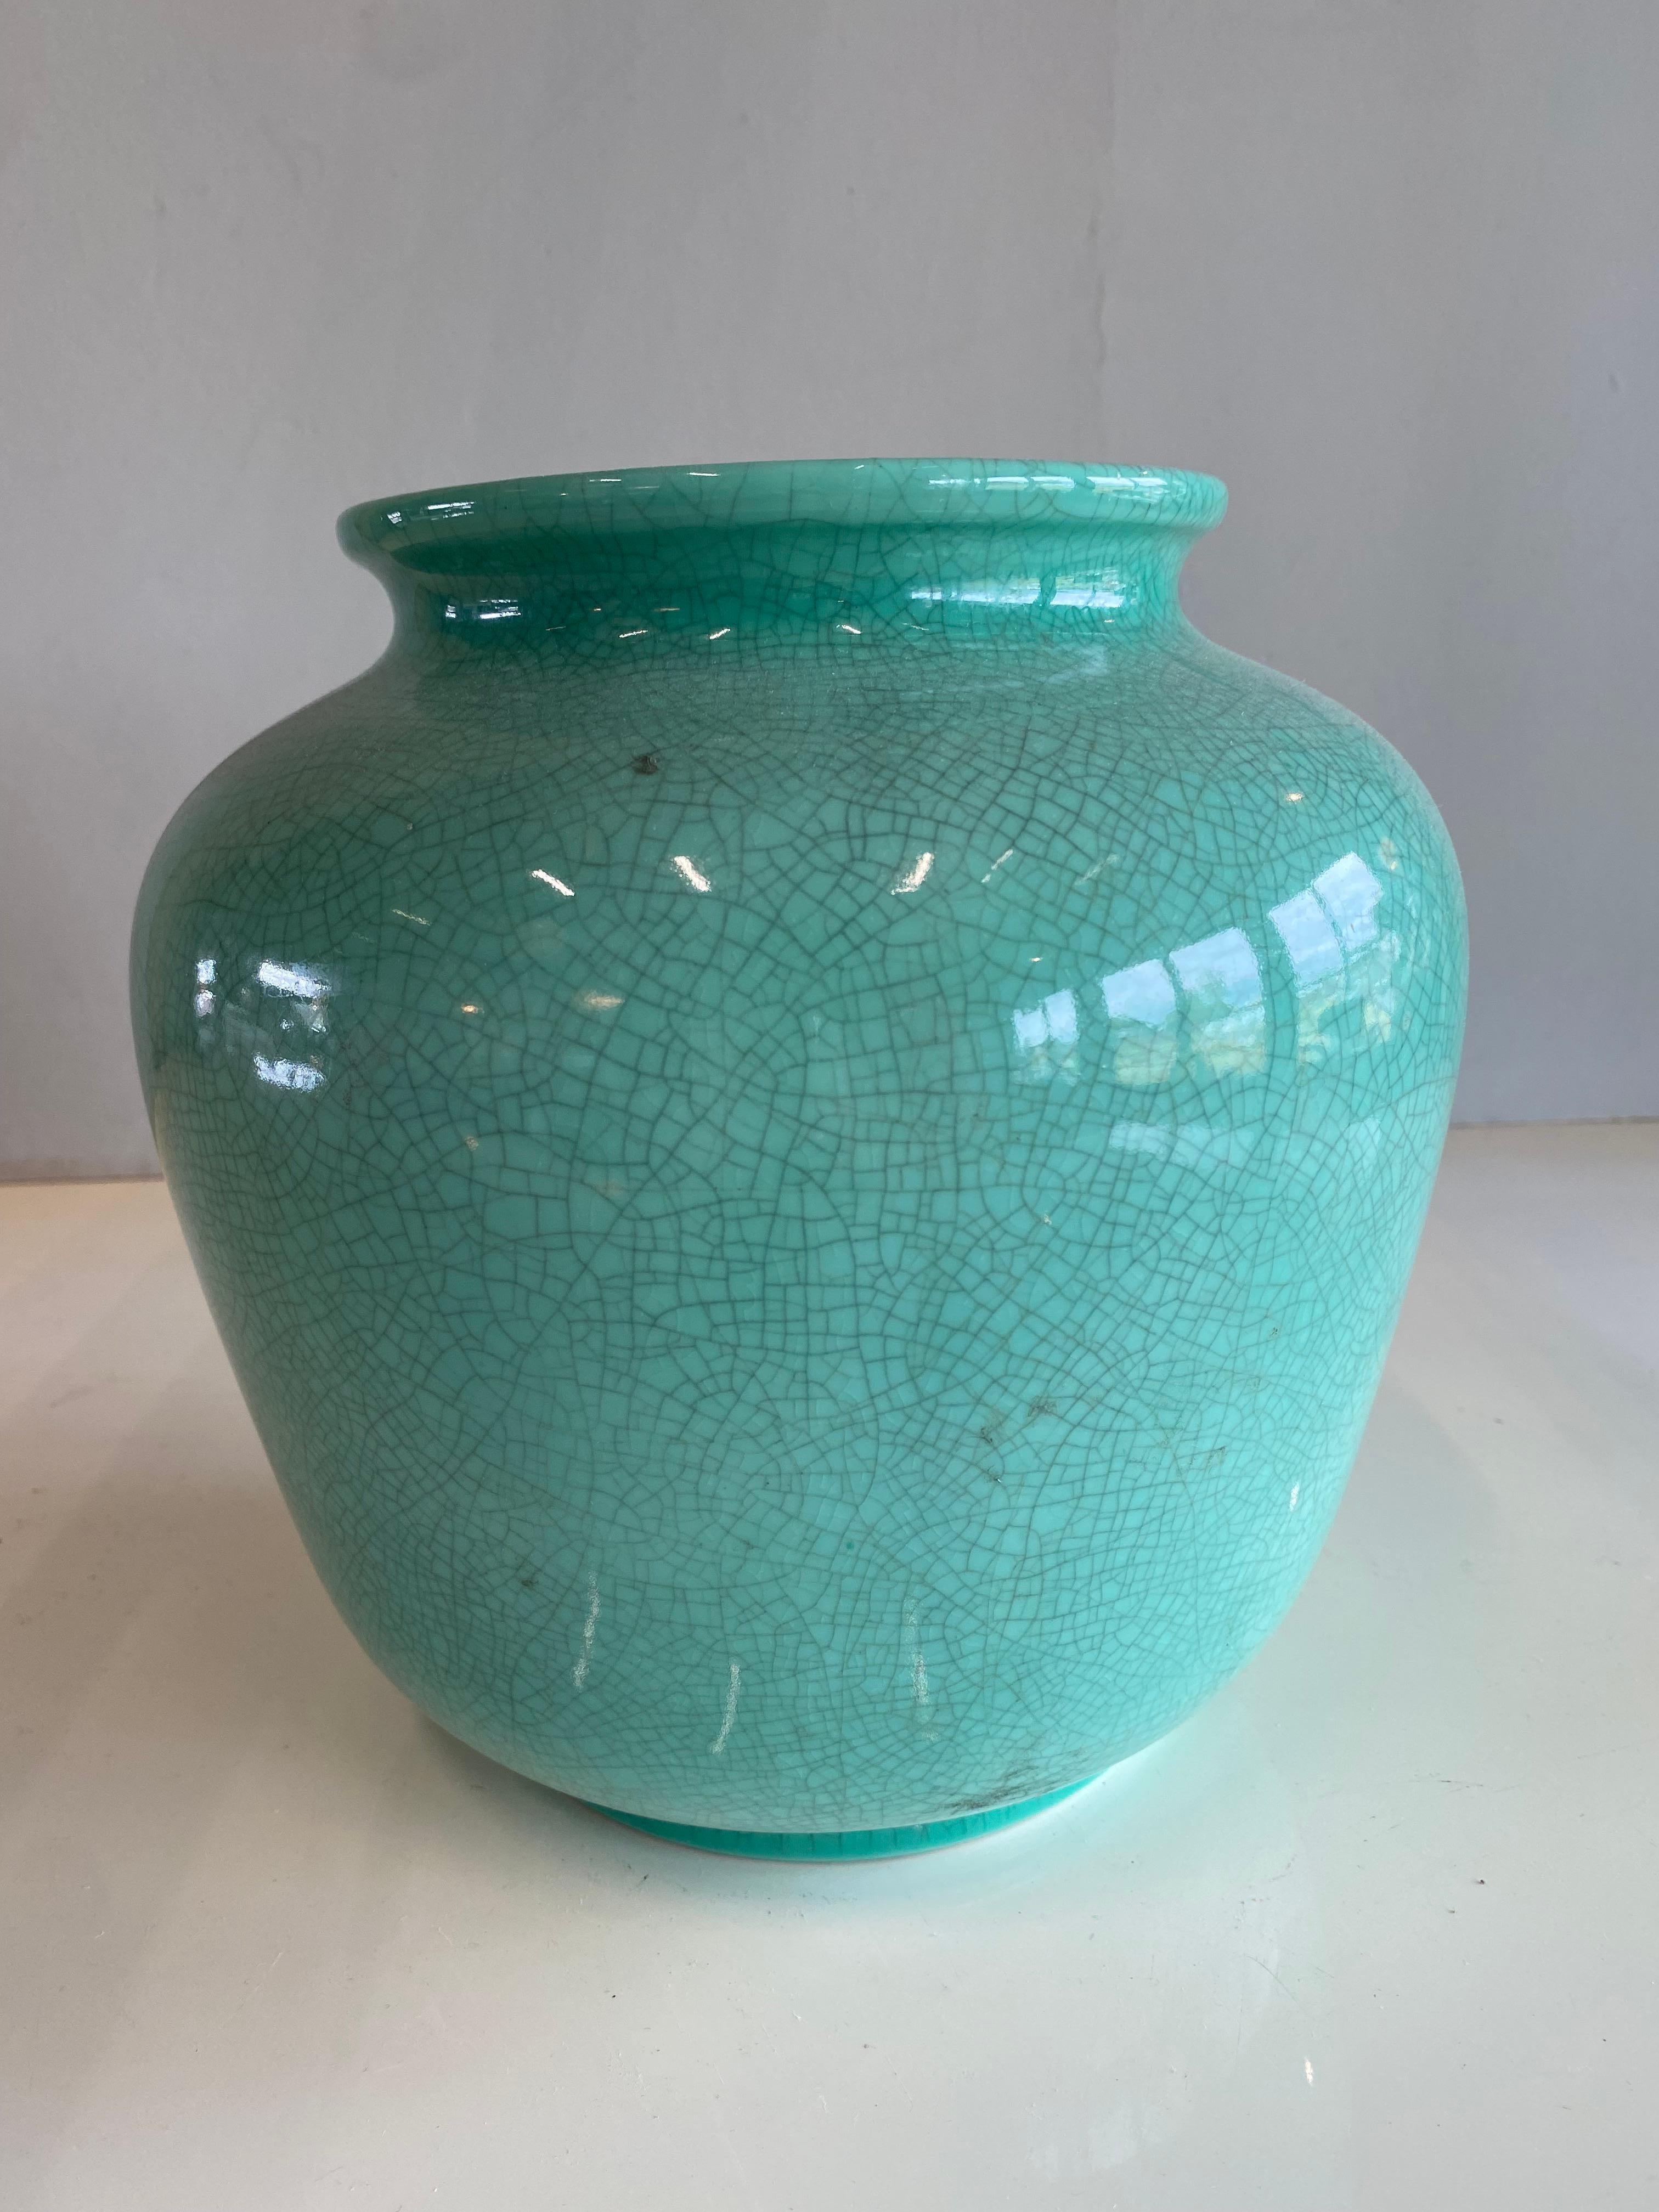 Diese hellgrüne Art-Déco-Vase stammt aus Deutschland und ist aus den 1920er Jahren. Sie ist ein Blickfang, der auch ohne Blumen frische Akzente in jedes Interieur bringt. Der pastellgrüne Ton lässt sich sehr gut mit modernen Elementen kombinieren,